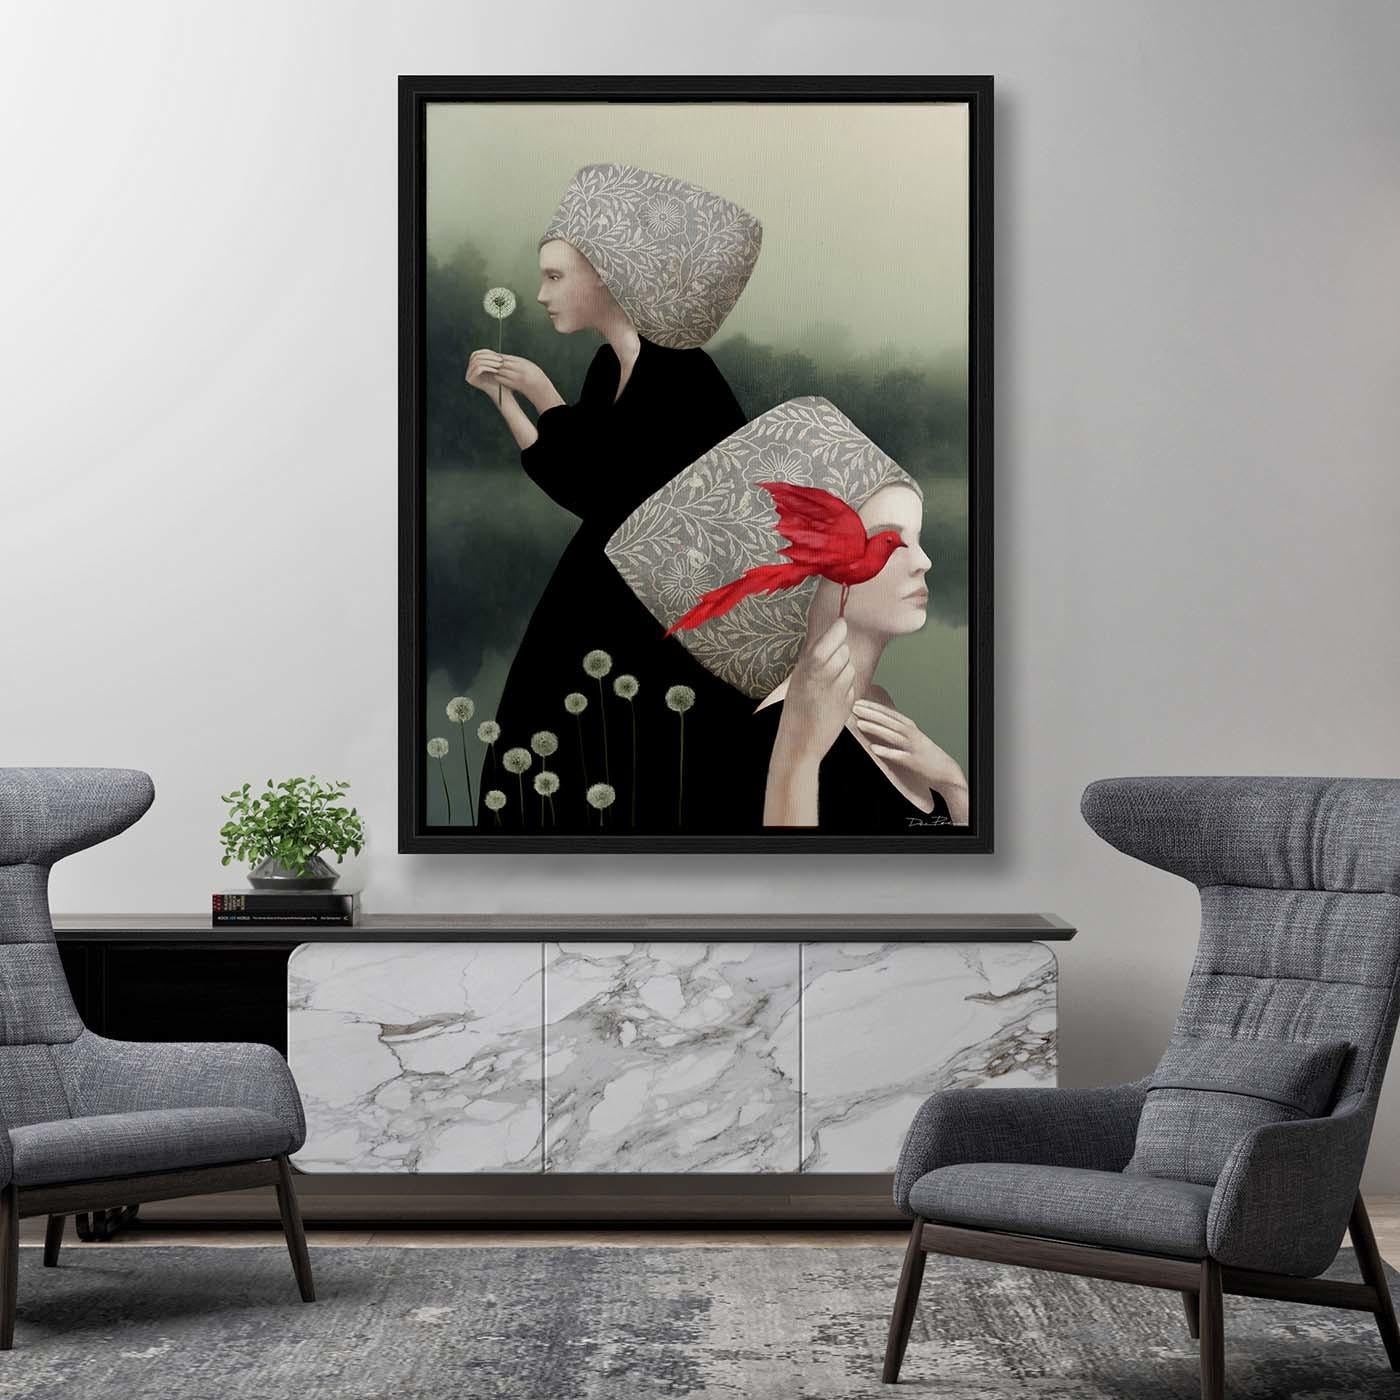 Peinte dans un style pop-surréaliste, cette peinture numérique représente deux femmes sur les rives brumeuses d'un lac. Parée de couvre-chefs élégants et inhabituels, l'une tient un pissenlit, tandis que l'autre s'accroche à un majestueux oiseau